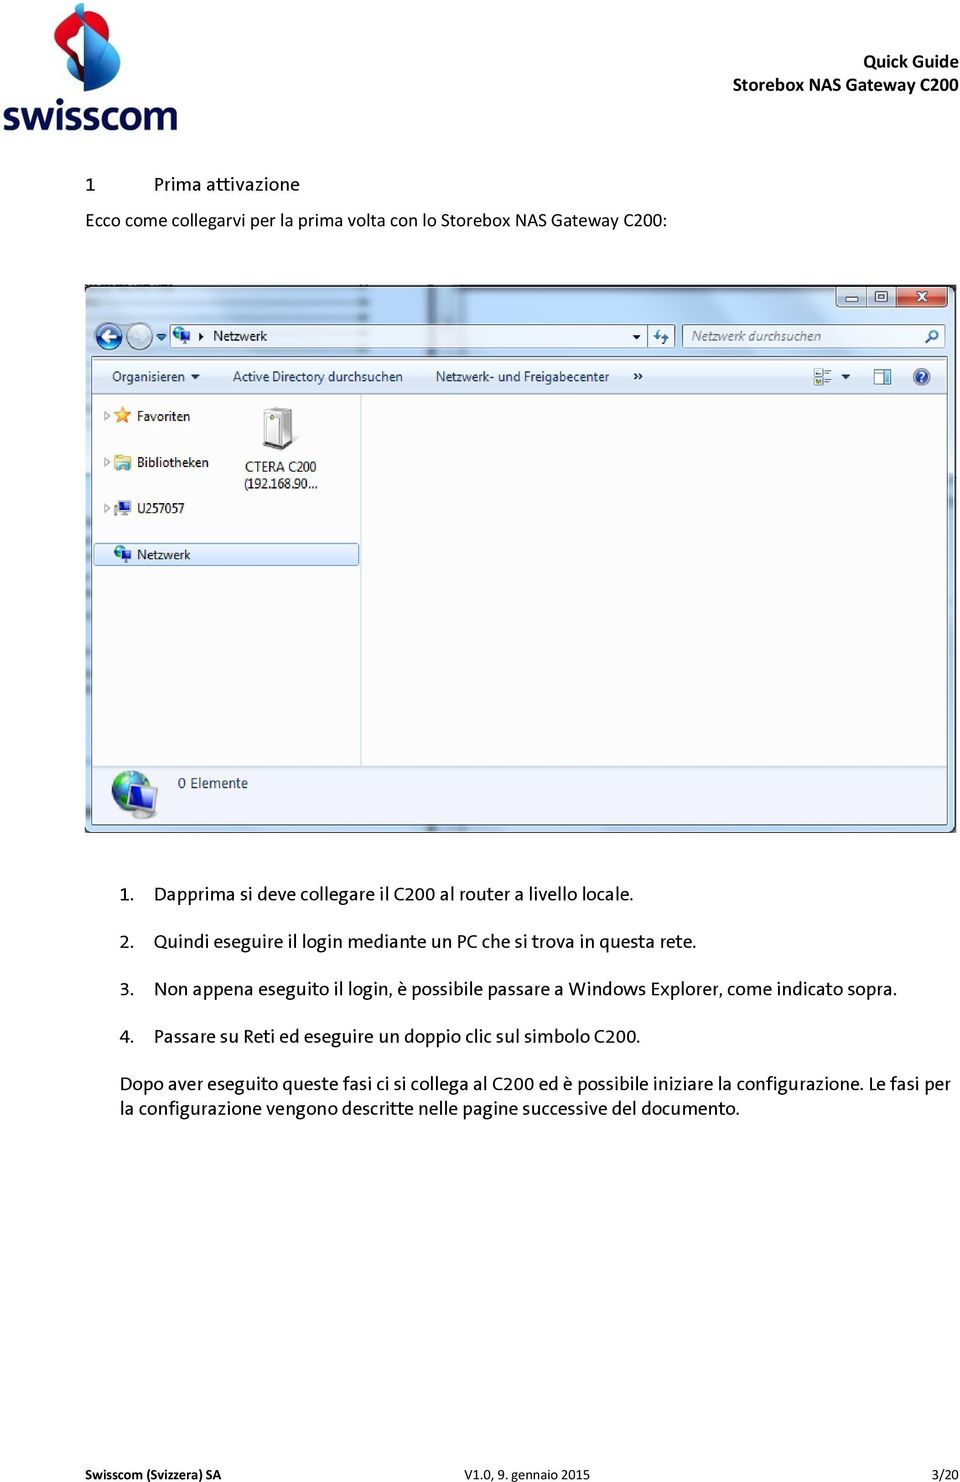 Non appena eseguito il login, è possibile passare a Windows Explorer, come indicato sopra. 4.